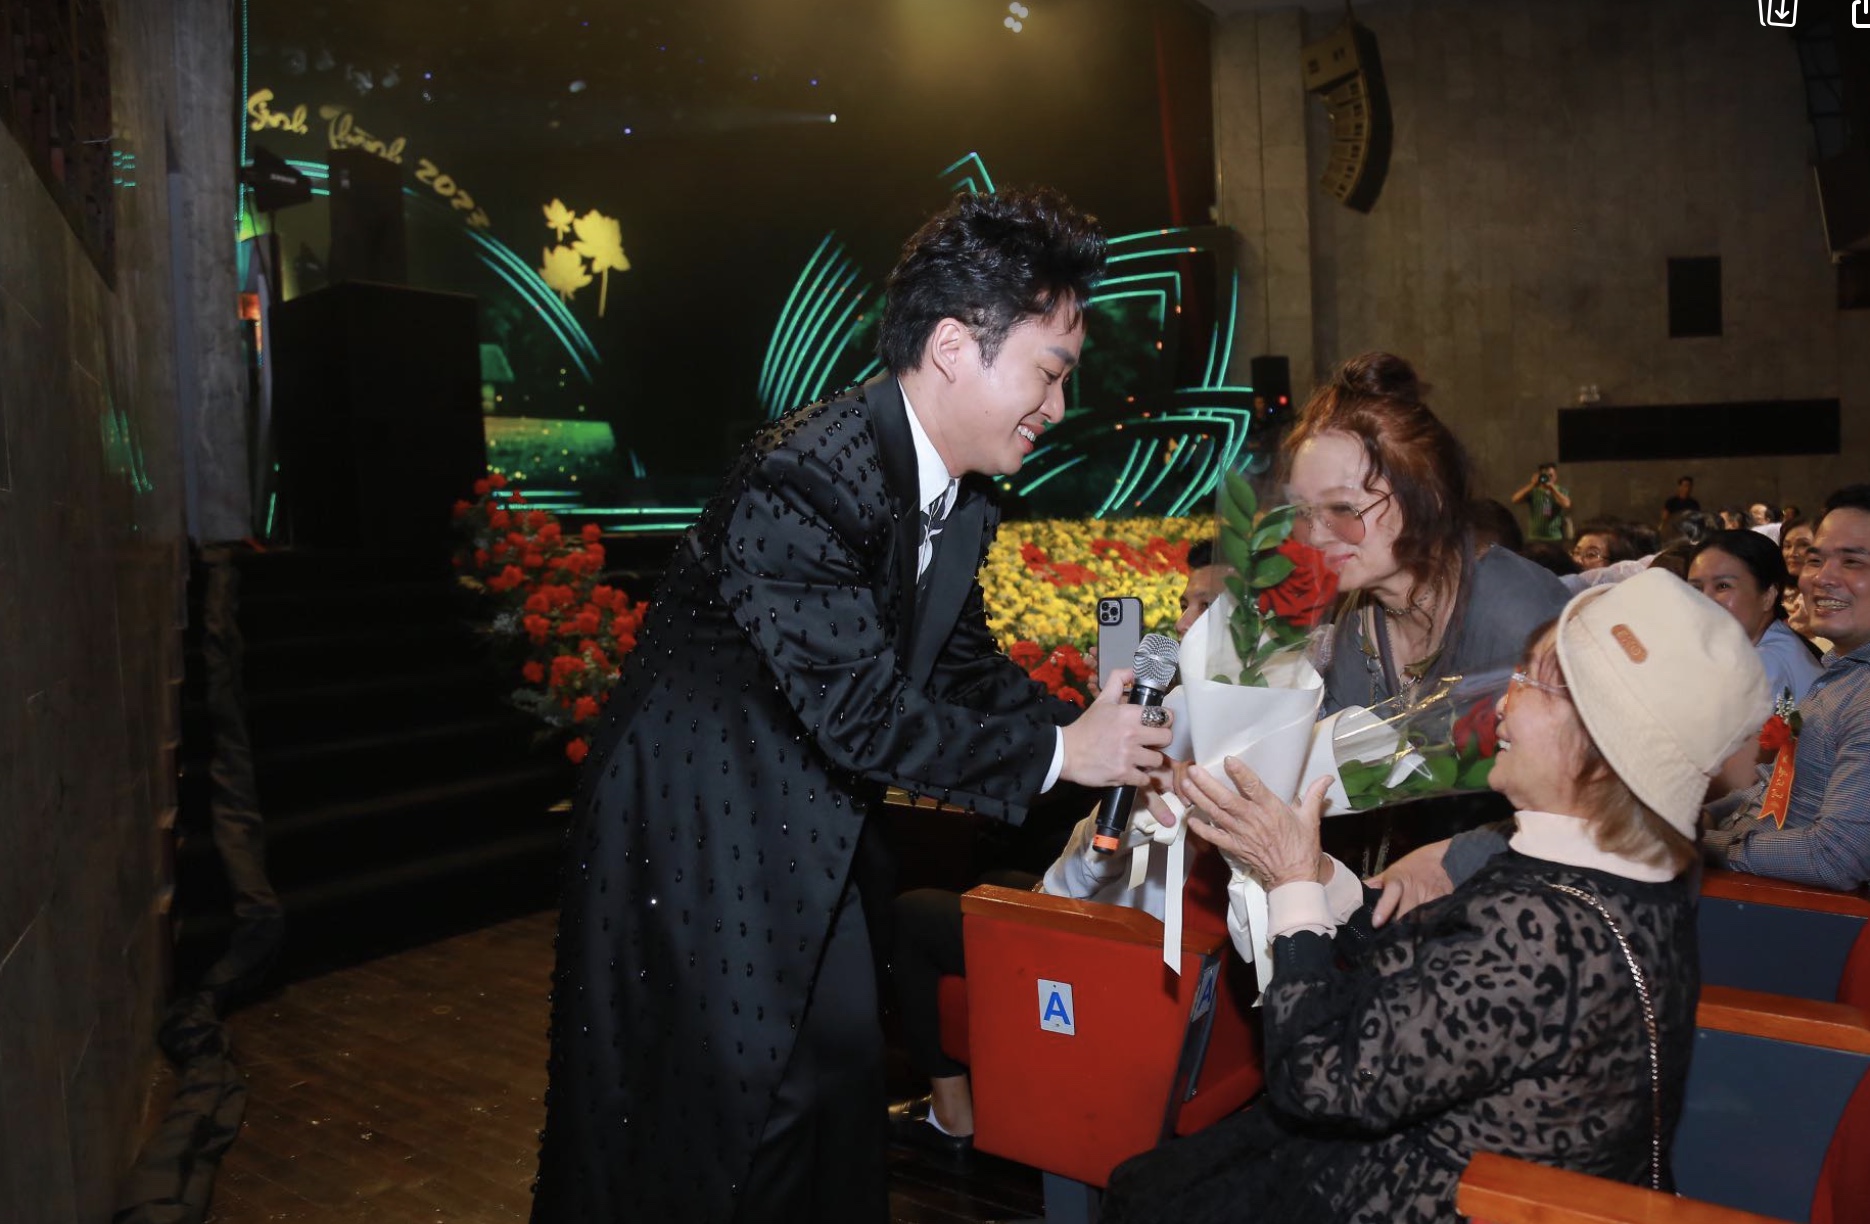 Khán giả xúc động trước cử chỉ đặc biệt Tùng Dương dành cho bà và mẹ sau khi biểu diễn - Ảnh 2.